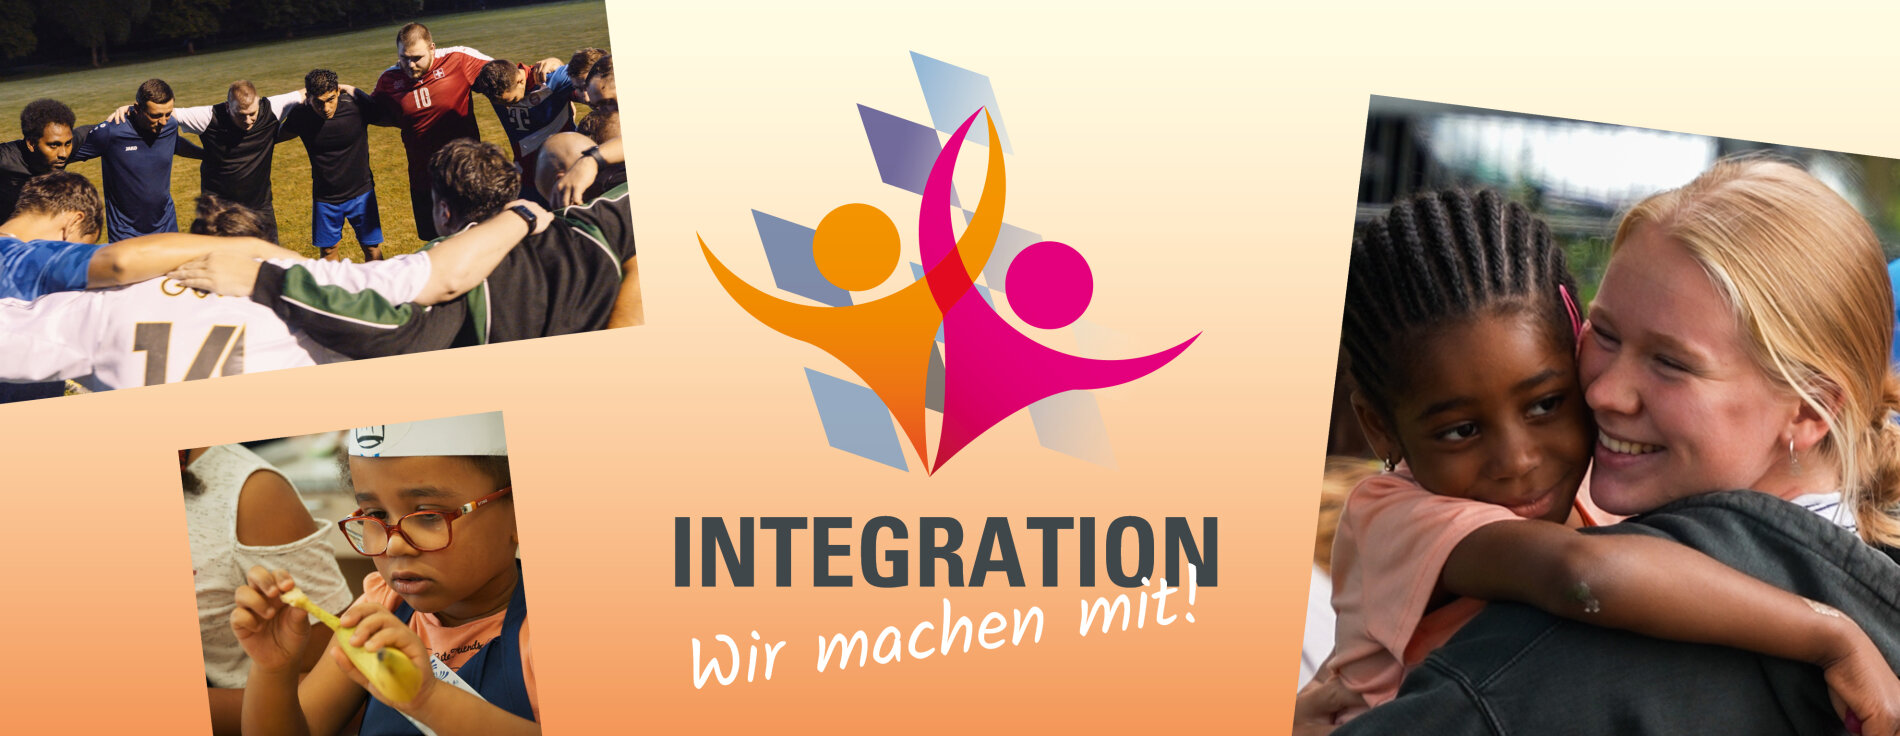 Grafik mit Fotos zur Videokampagne "Integration - Wir machen mit!"